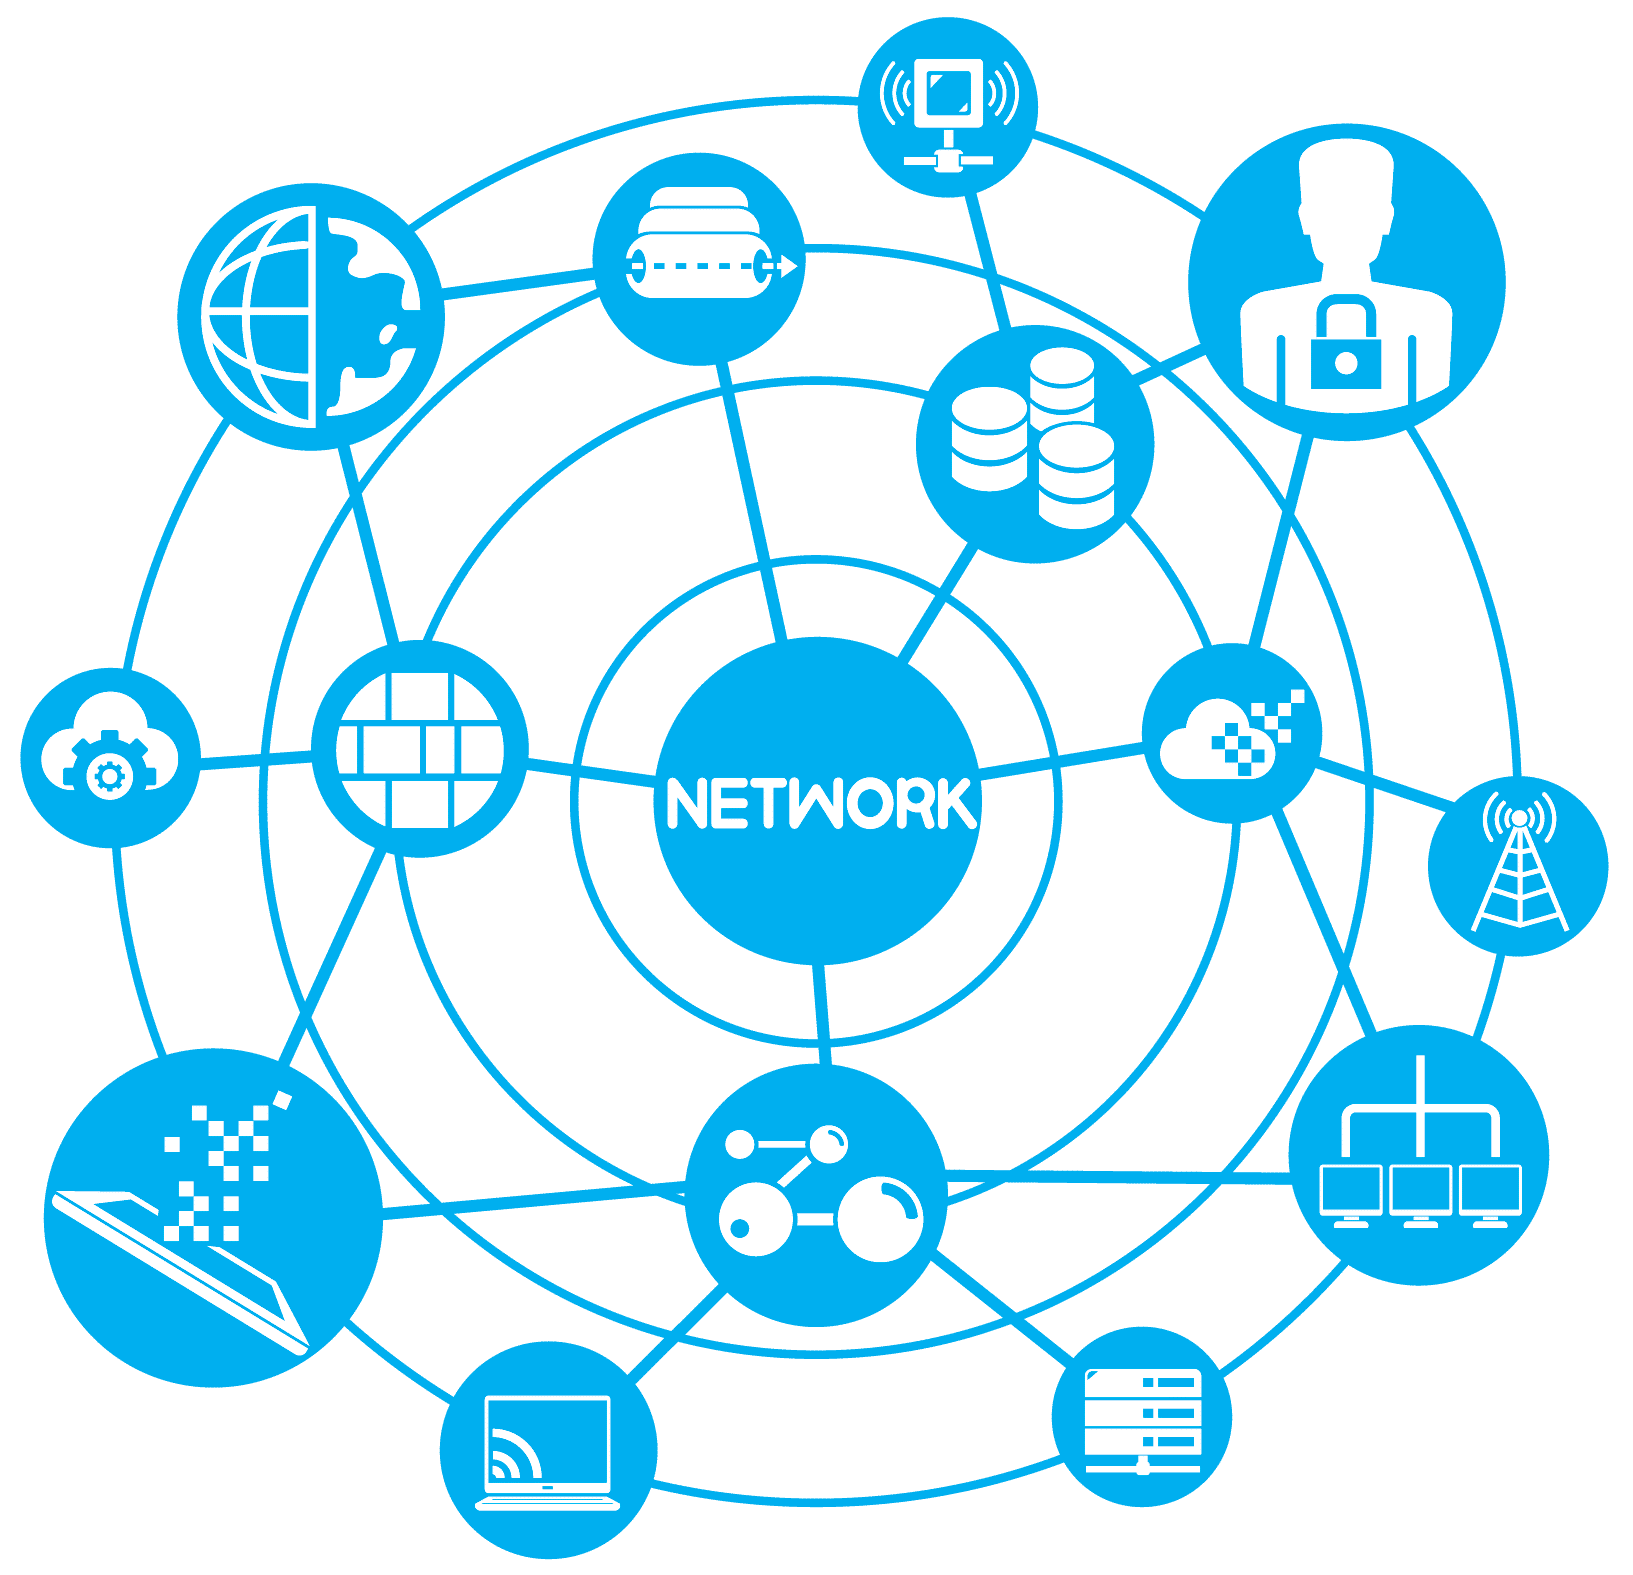 ما هو البروتوكول؟ تعريف بروتوكول الشبكة